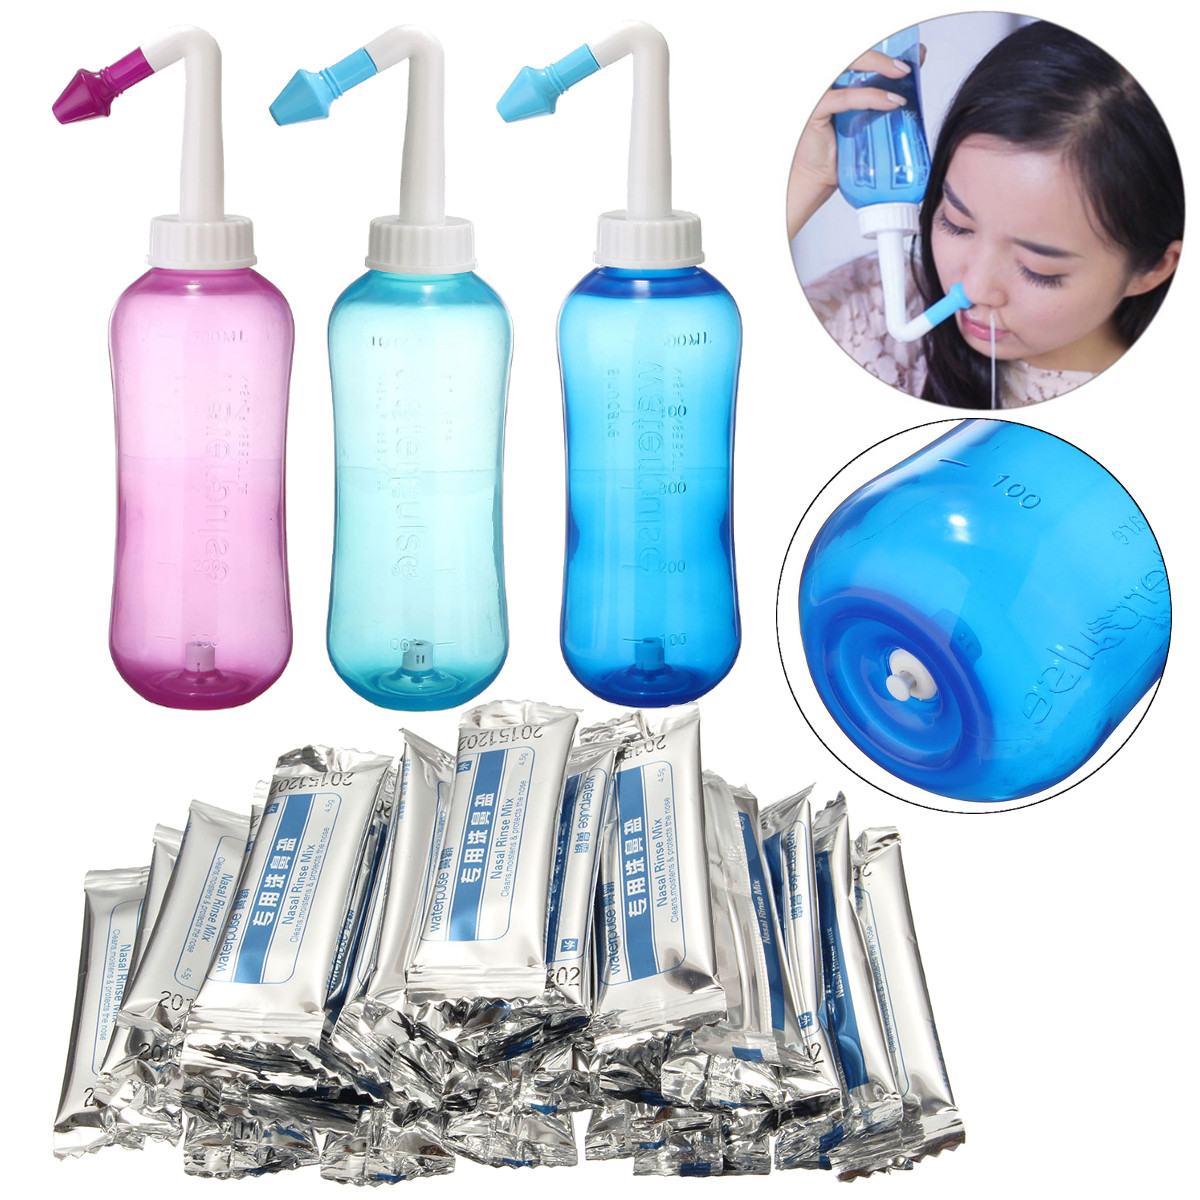 

500ml Neti Pot Nasal Rinsing Nose Wash System Sinus Irrigation with 30 Bag Wash Salt Nasal Irrigator Washing